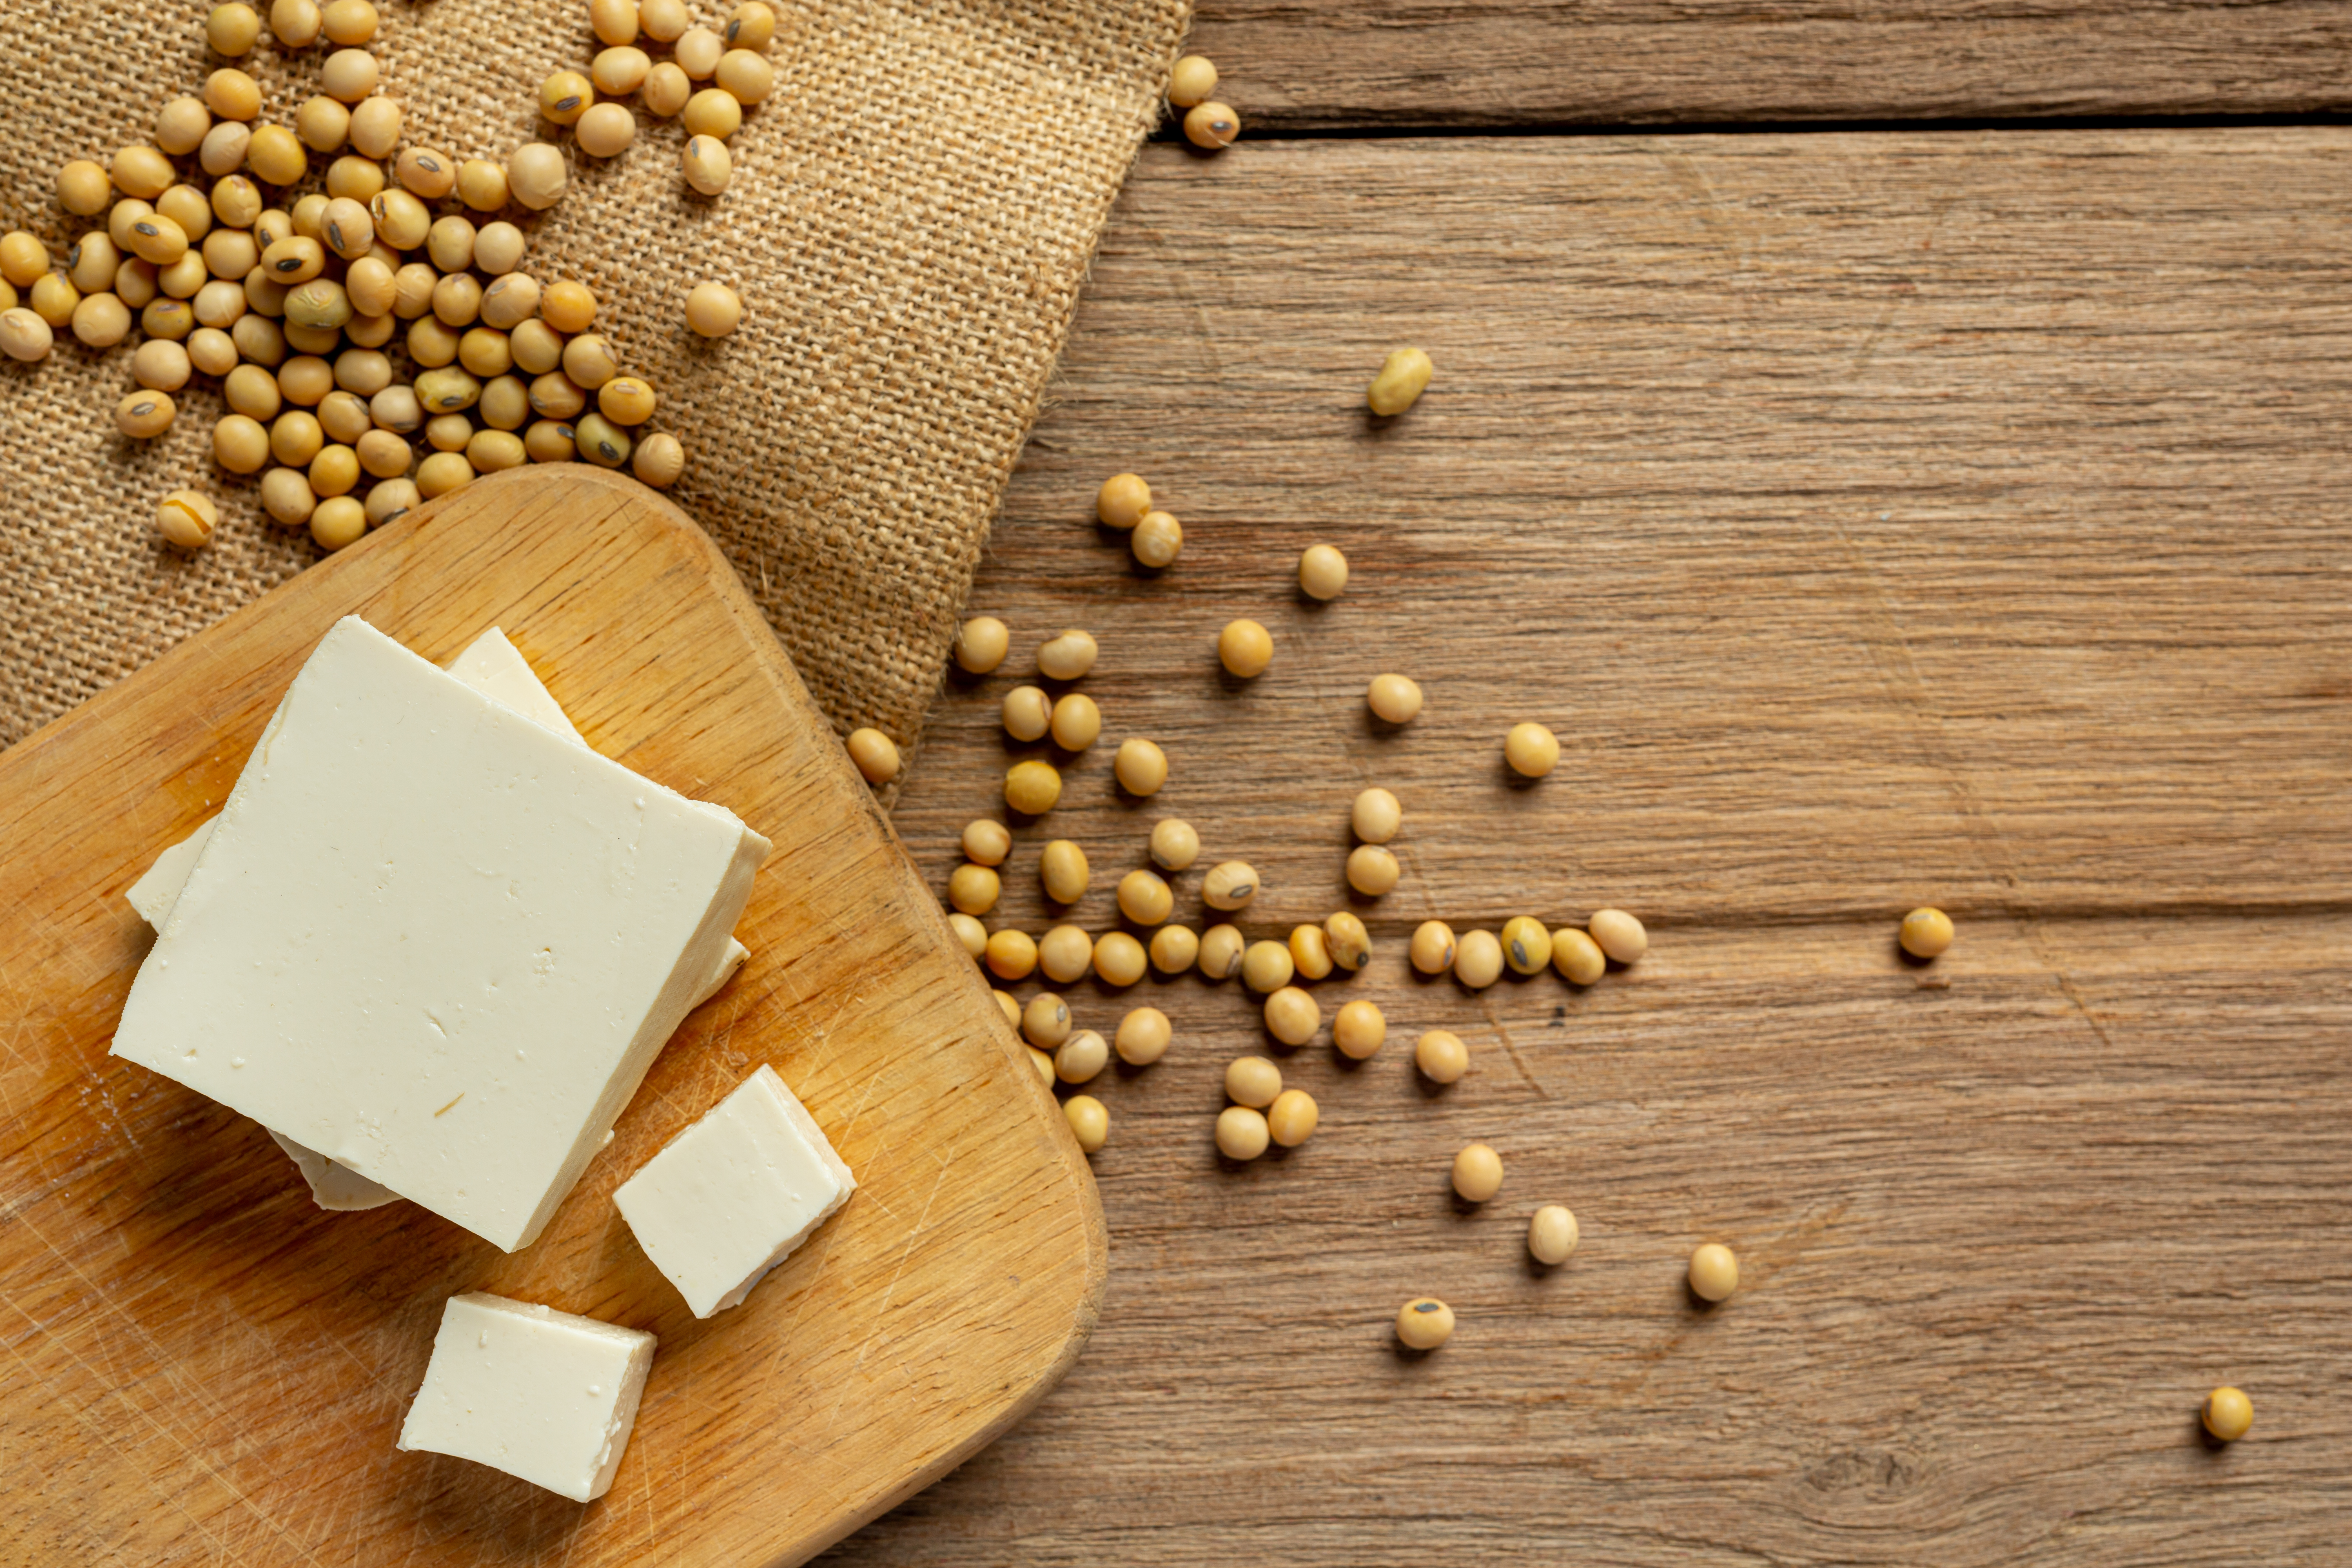 나무 도마 위의 두부와 그 주변에 두부 콩을 흩어 놓은 사진 (tofu-made-from-soybeans-food-nutrition-concept)